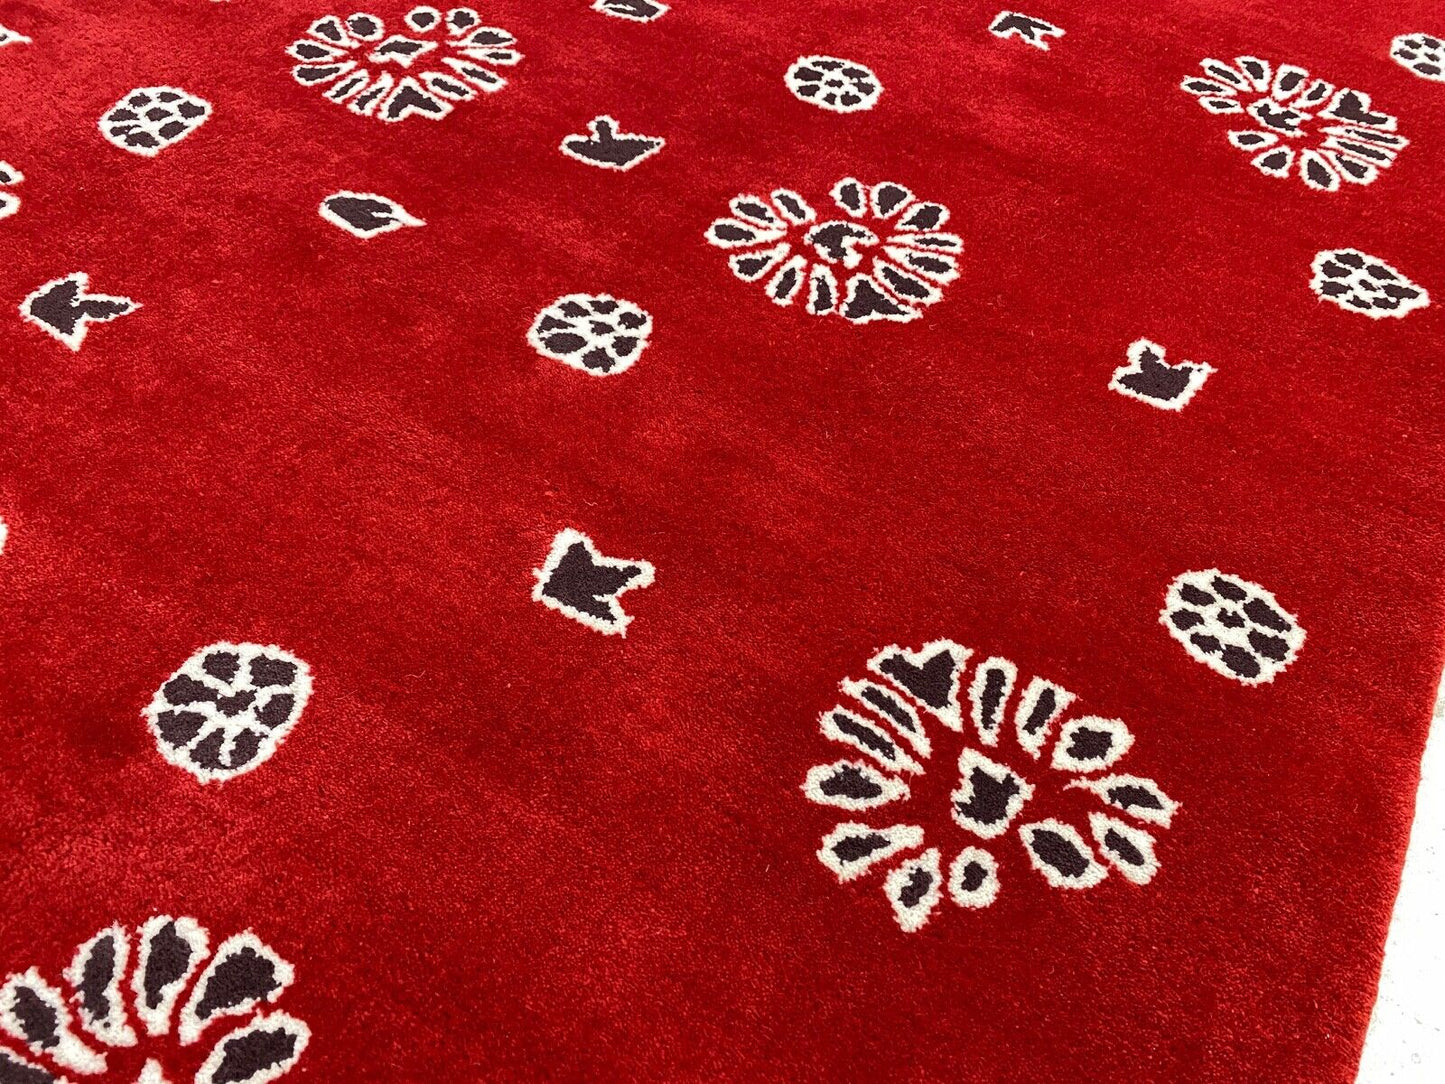 Rot Teppich 200X300 CM 100% Wolle Handarbeit Designer Orientteppich WT2